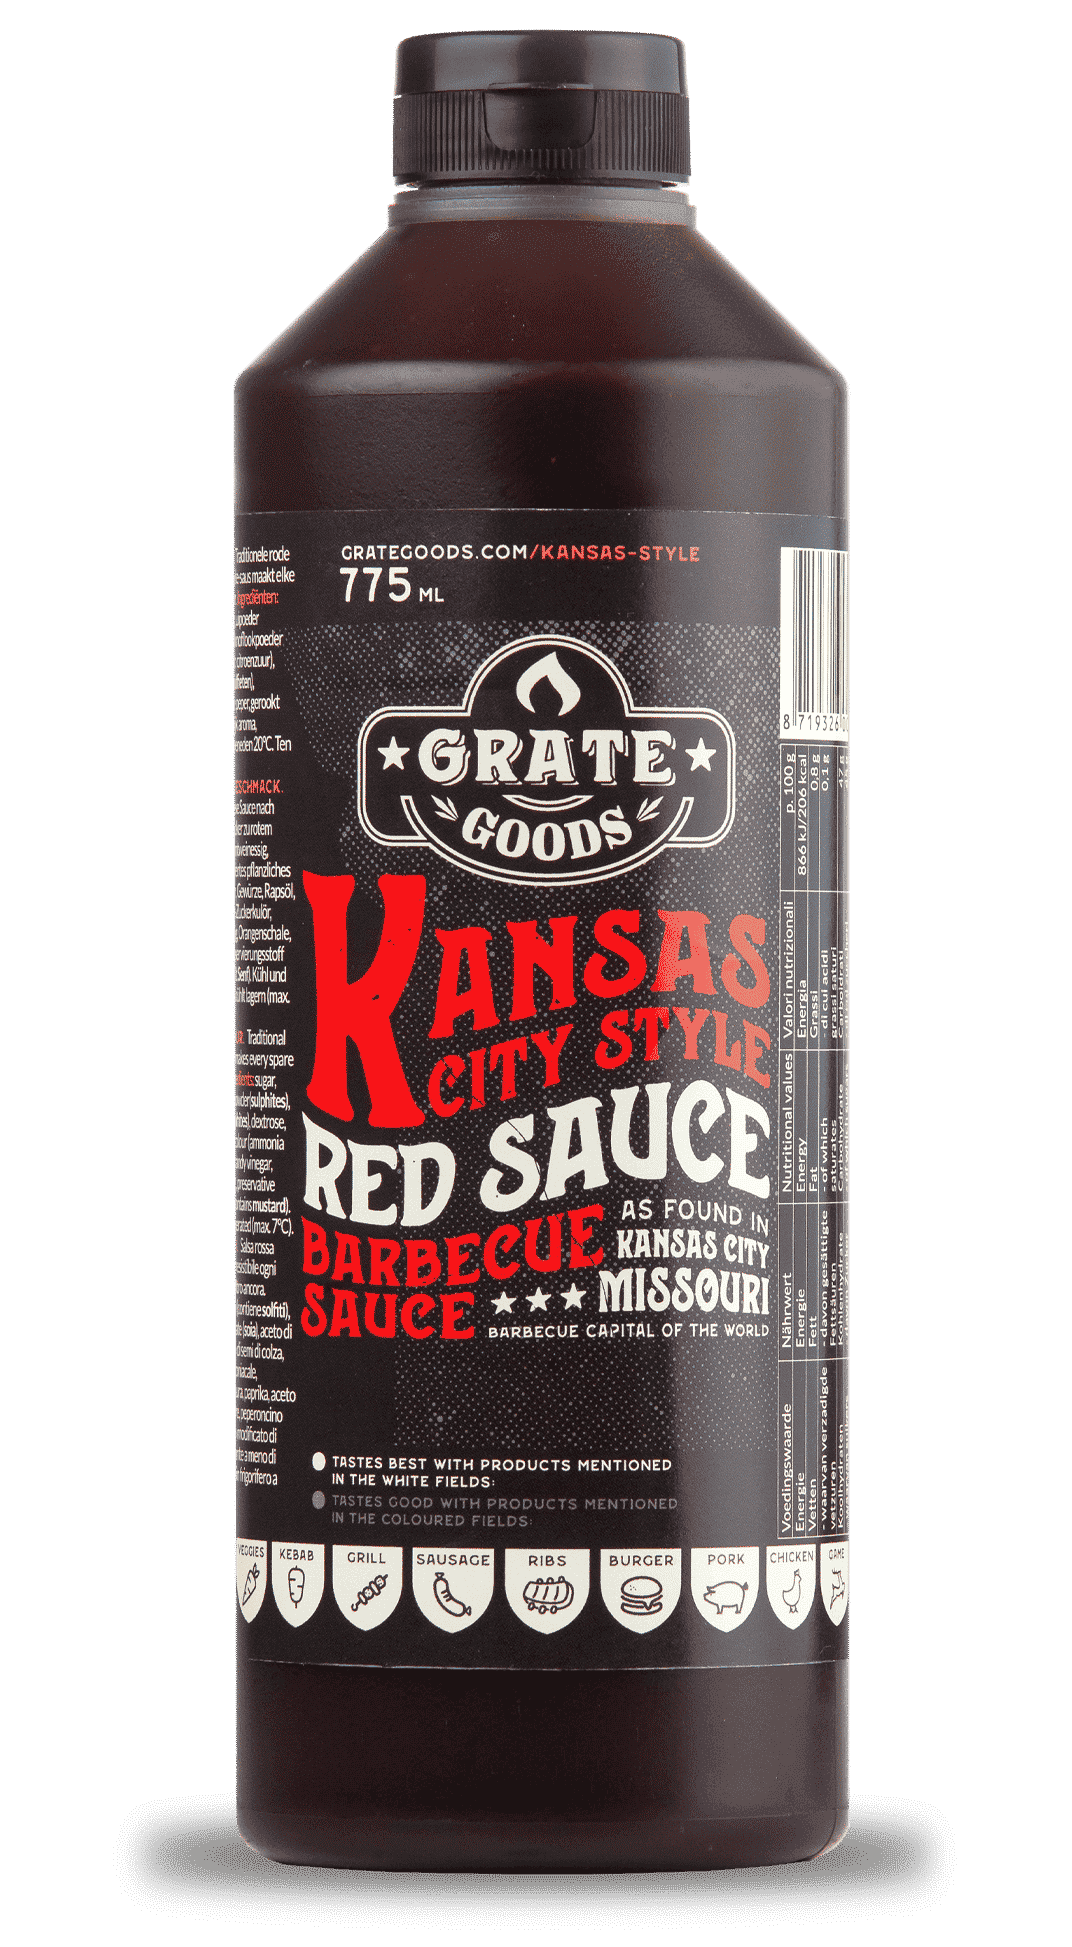 grate goods kansas city red sauce barbecue sauce - bbq saus